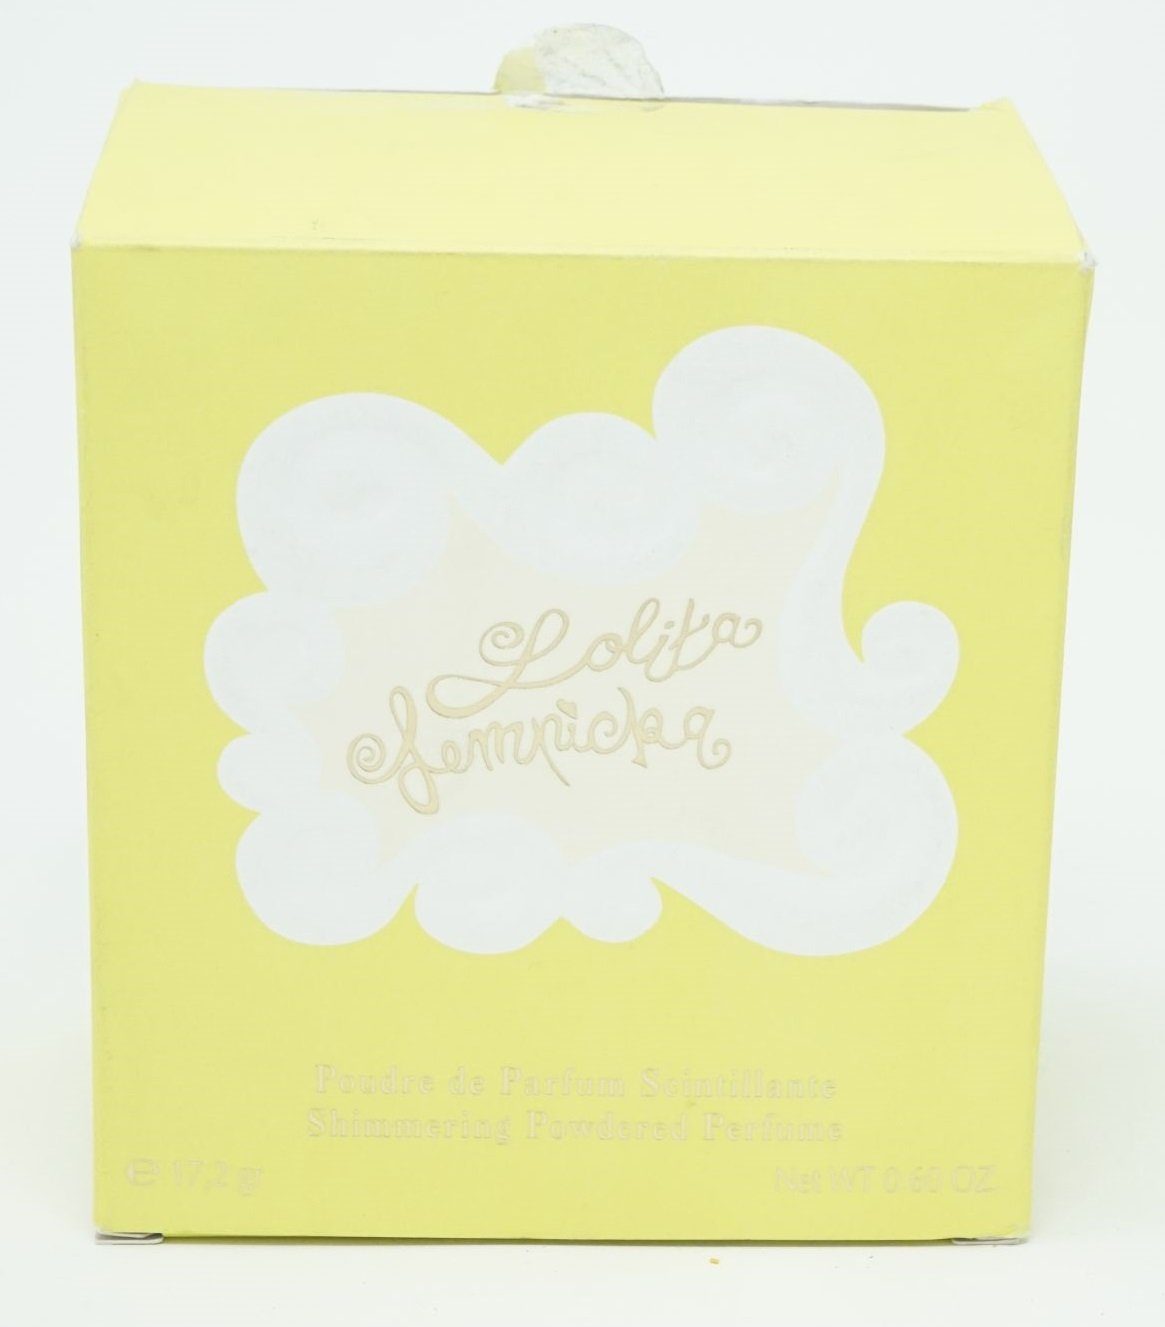 Lolita Lempicka Öl-Parfüm Lempicka Shimmering 17,2g Perfume Lolita Powdered